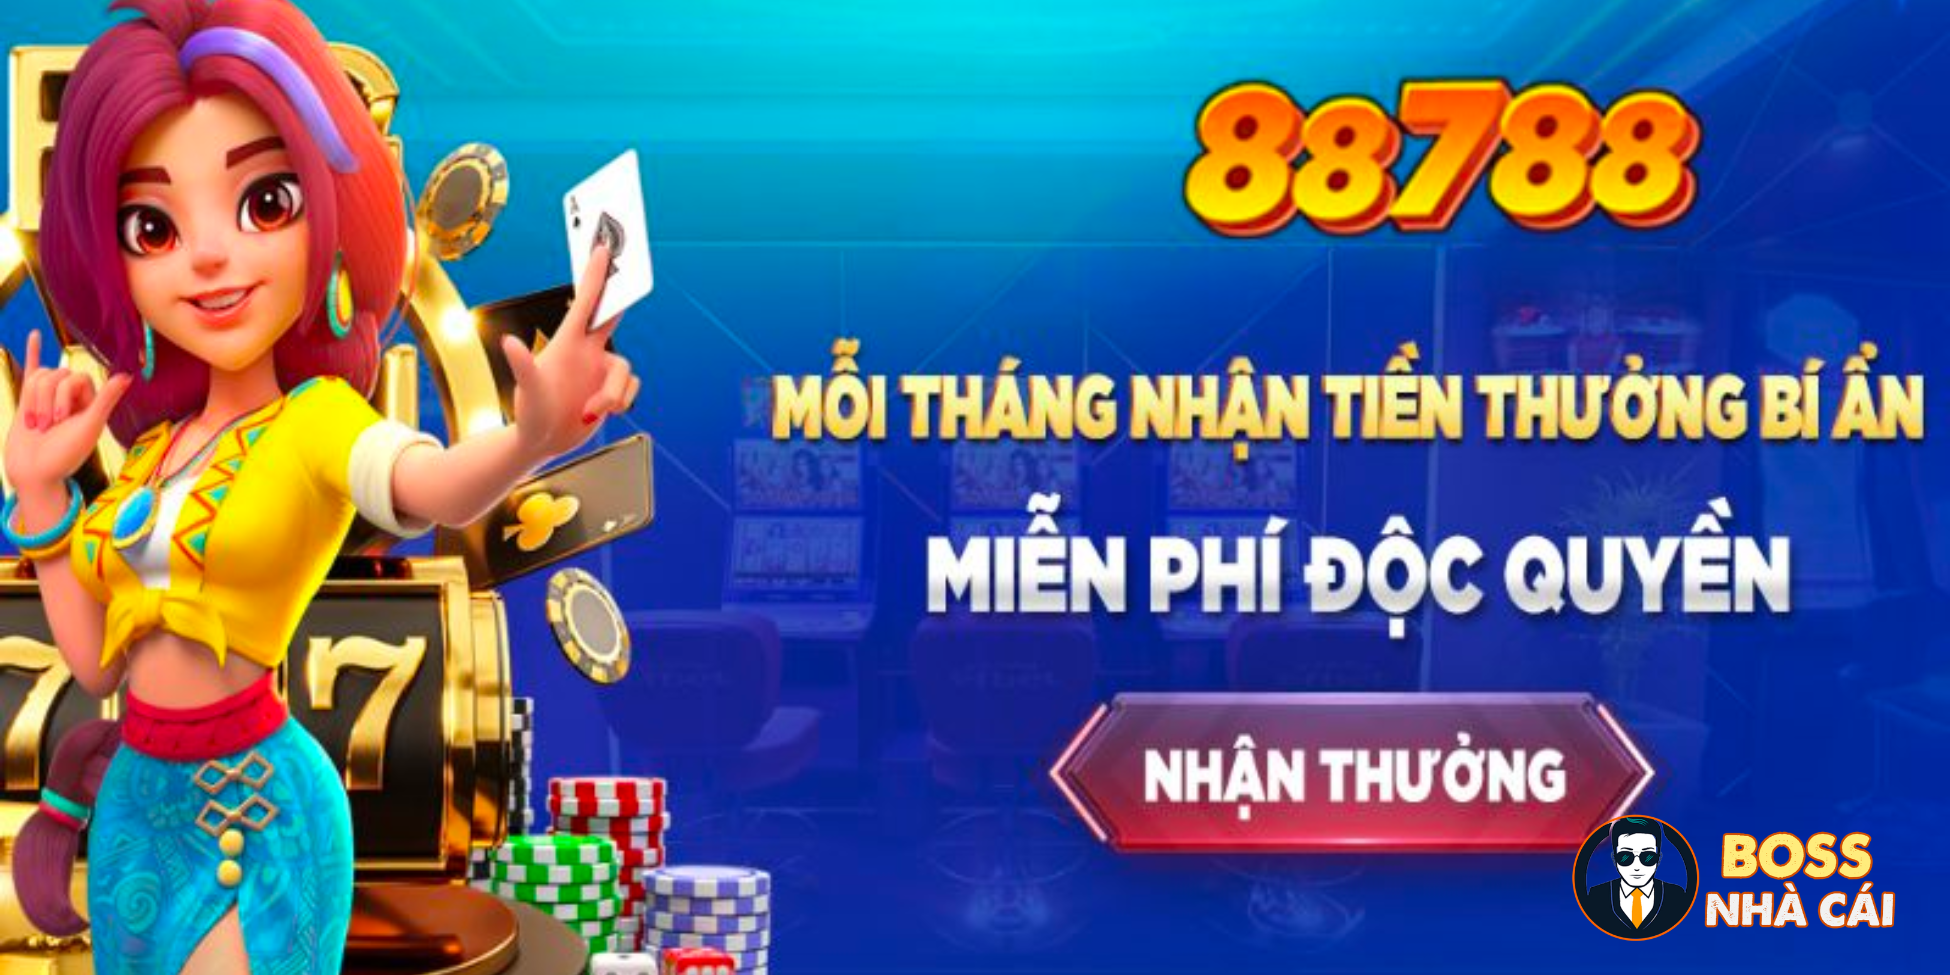 88788 – Review Nhà cái 88788 Casino Vừa Ra Mắt